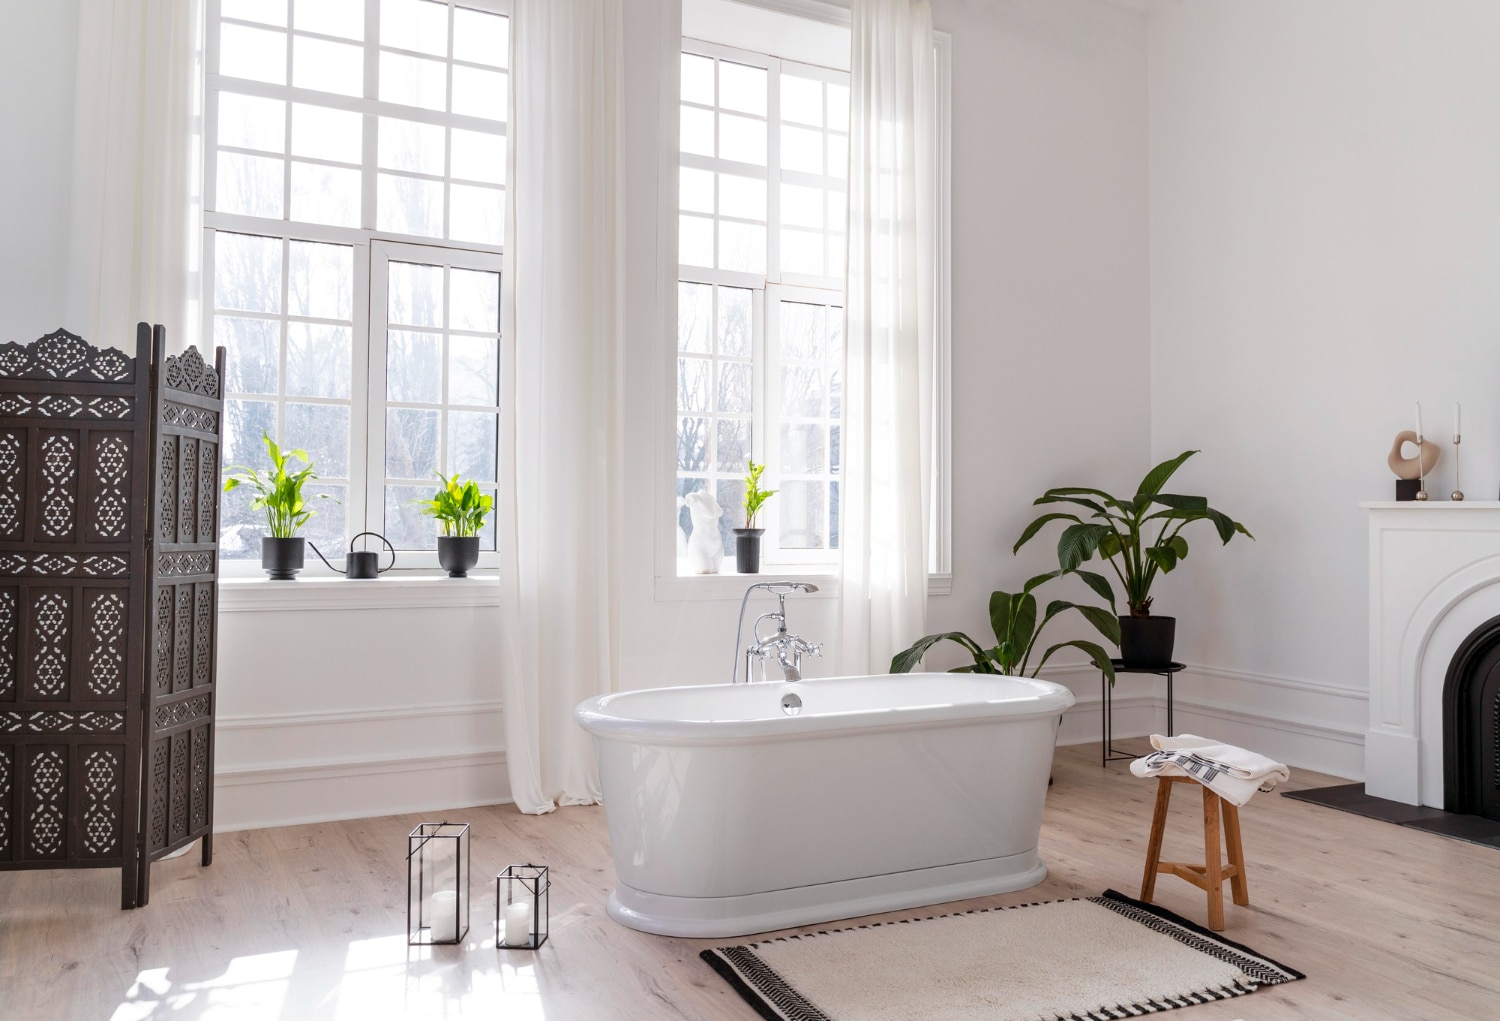 Iluminación y ventilación en el diseño de baños: claves para un ambiente cómodo y saludable